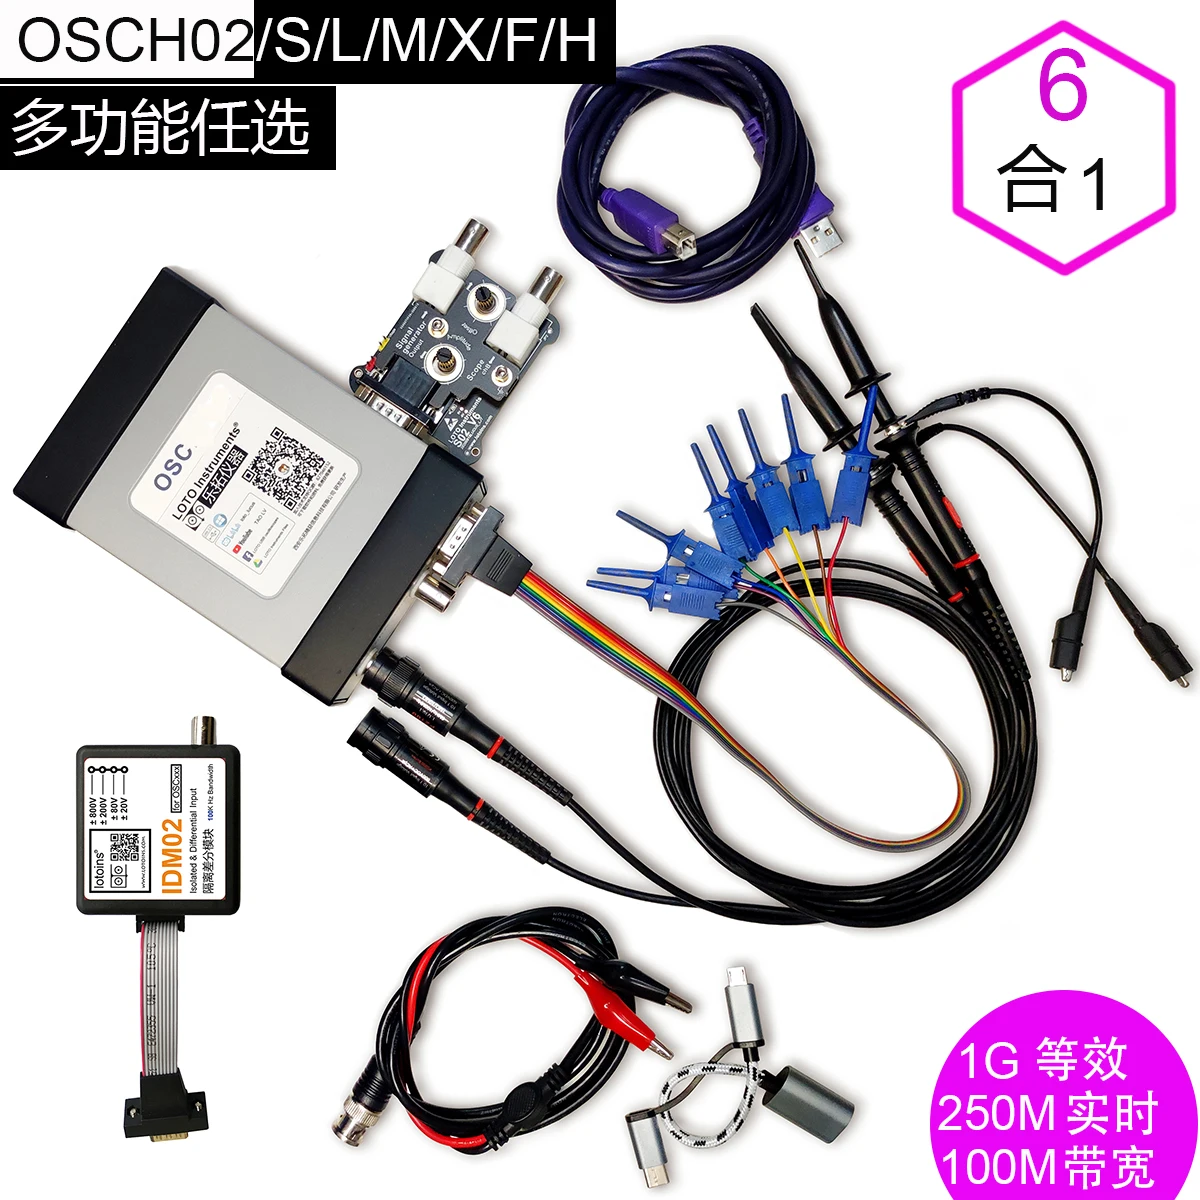 Usb-осциллограф LOTO_USB осциллограф с разрешением 100 м виртуальный OSCH02 источник